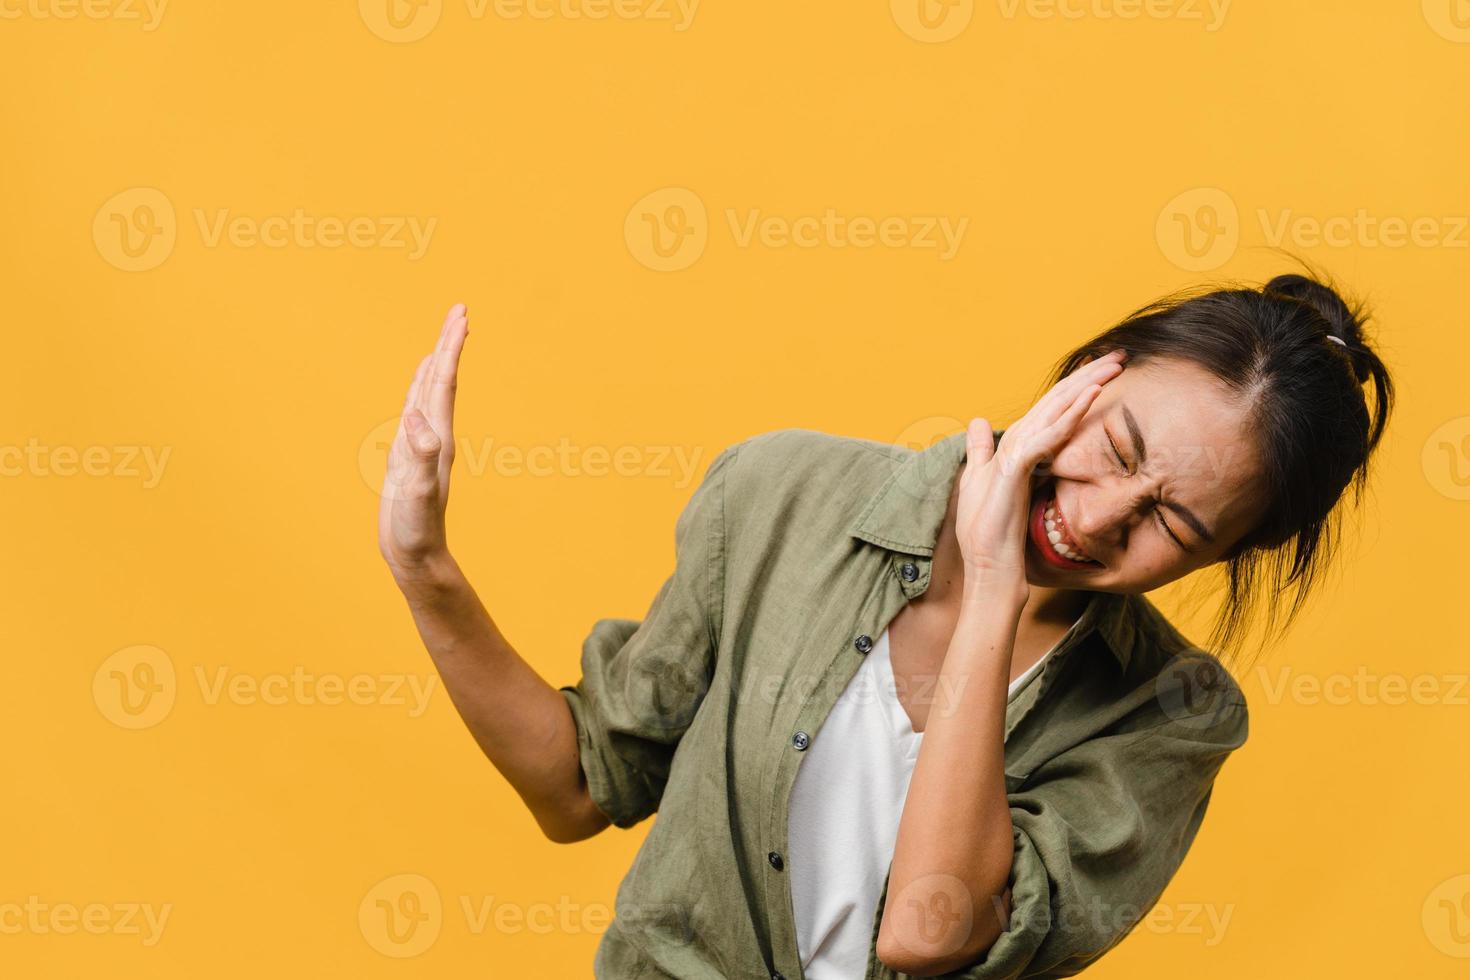 jonge aziatische dame voelt geluk met positieve uitdrukking, vrolijke verrassing funky, gekleed in casual doek geïsoleerd op gele achtergrond. gelukkige schattige blije vrouw verheugt zich over succes. gezichtsuitdrukking. foto